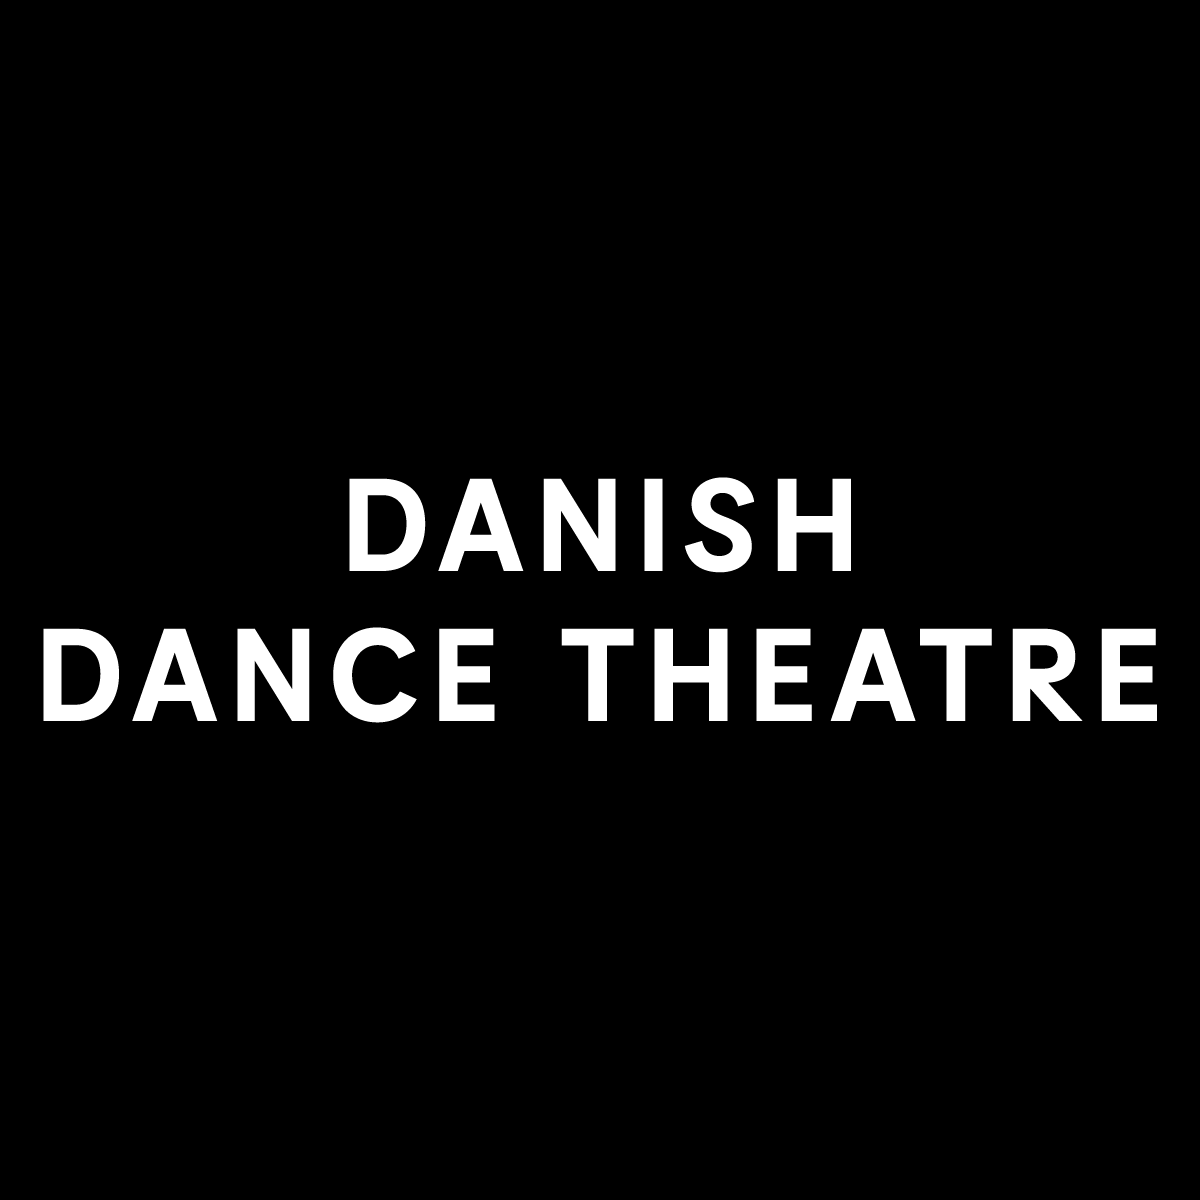 Dansk Danseteater